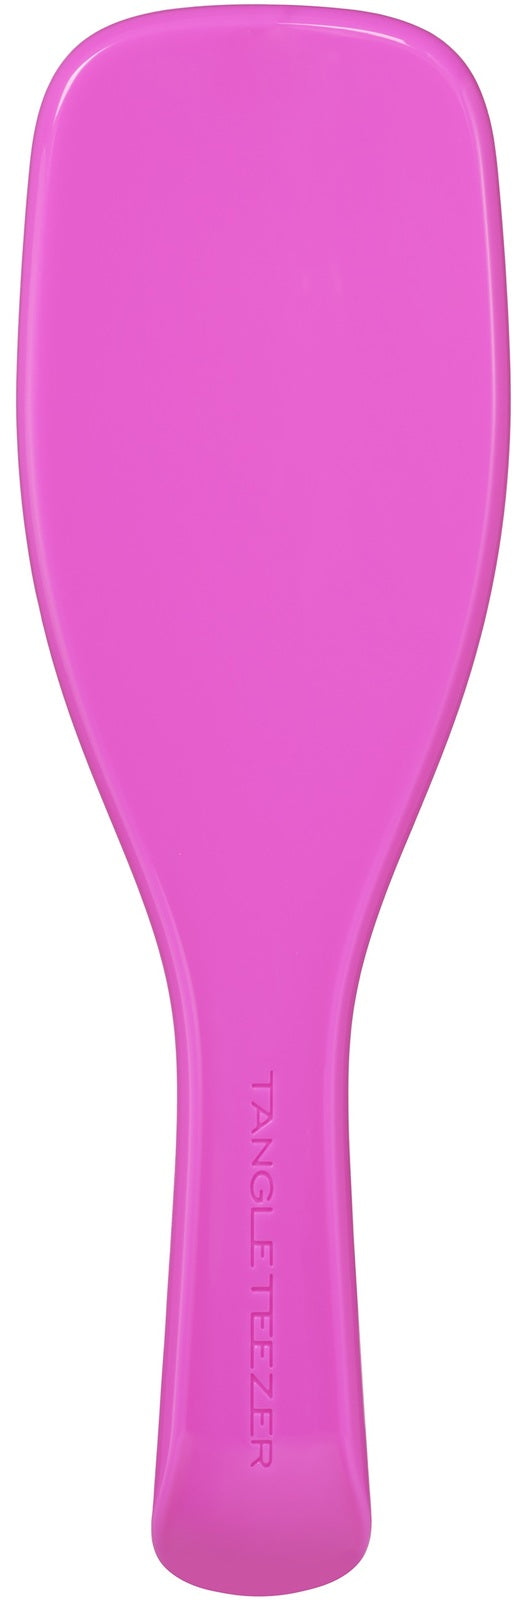 Tangle Teezer: Ultimate Detangler Brush - Curly Hyper Pink/Lime